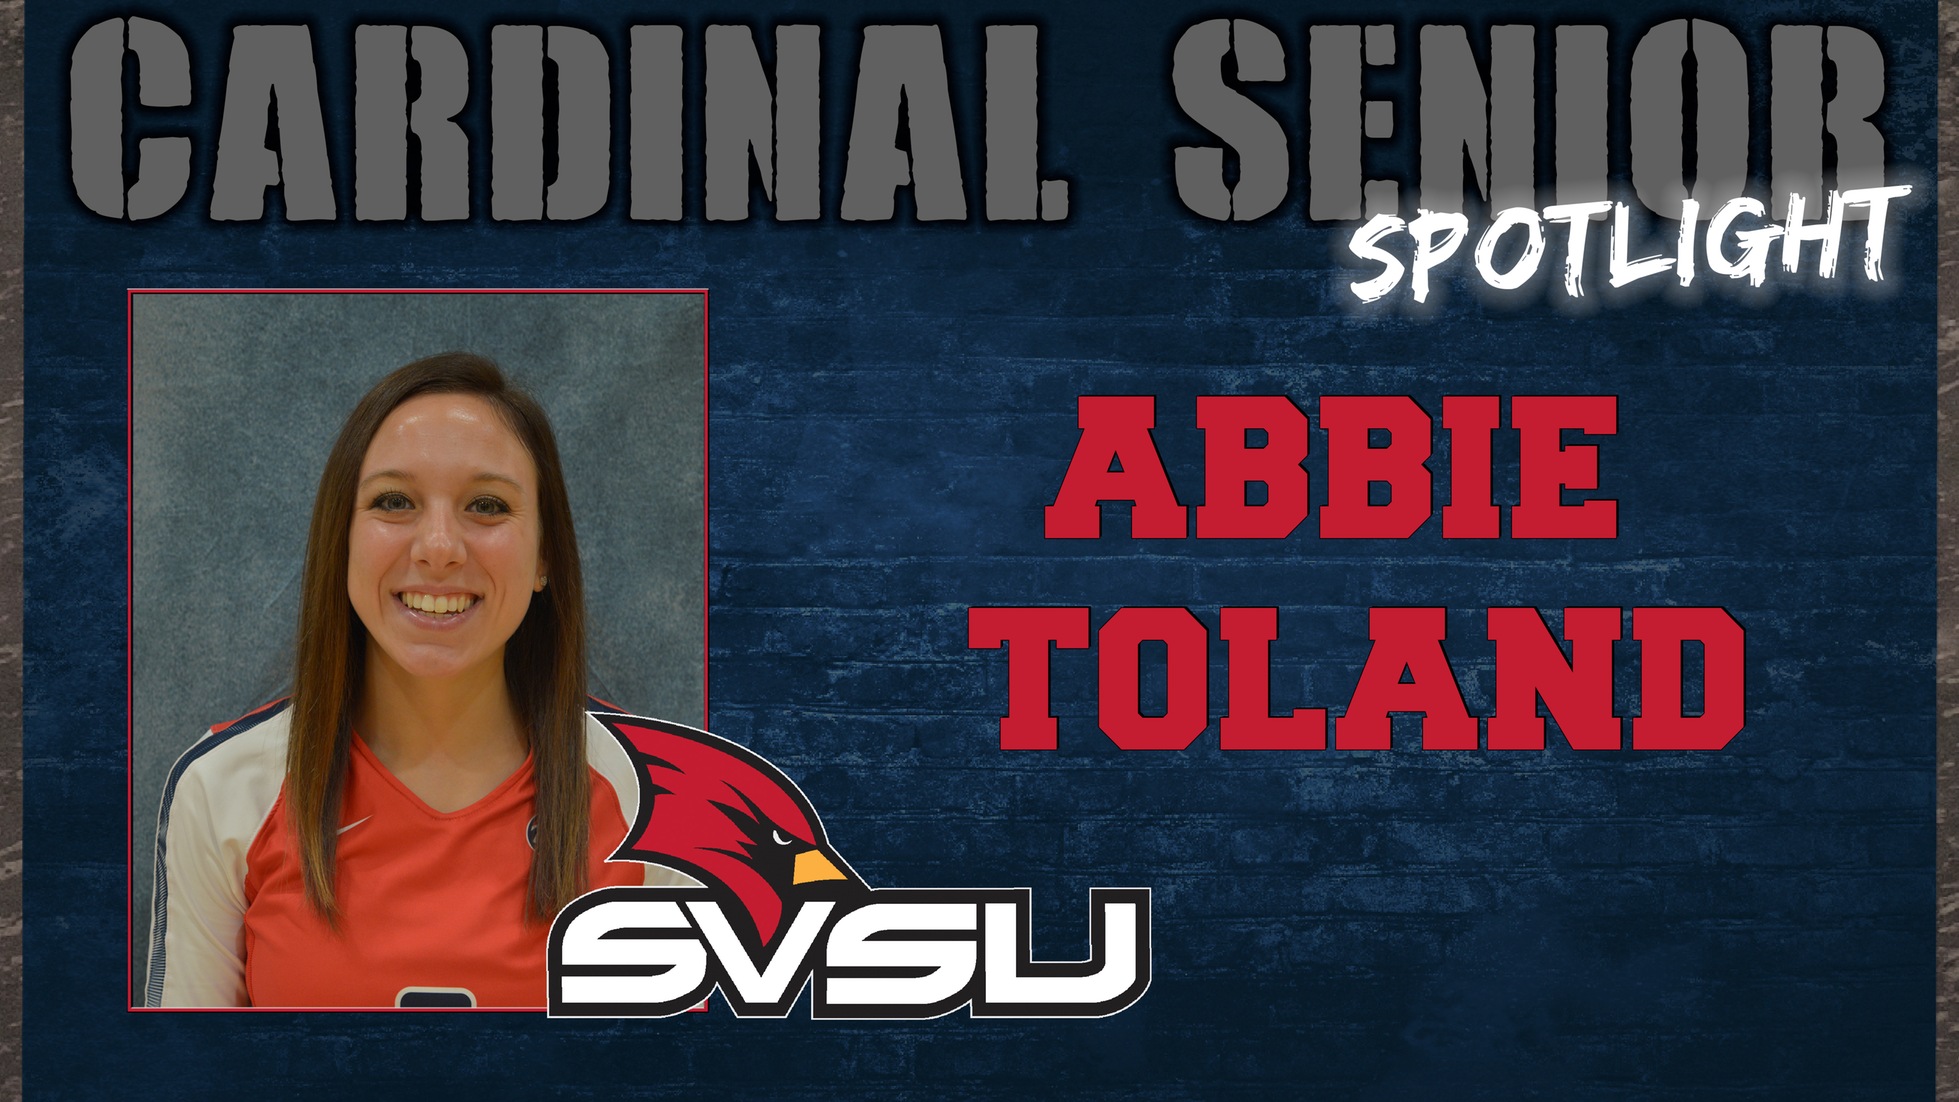 SVSU Cardinal Senior Spotlight - Abbie Toland